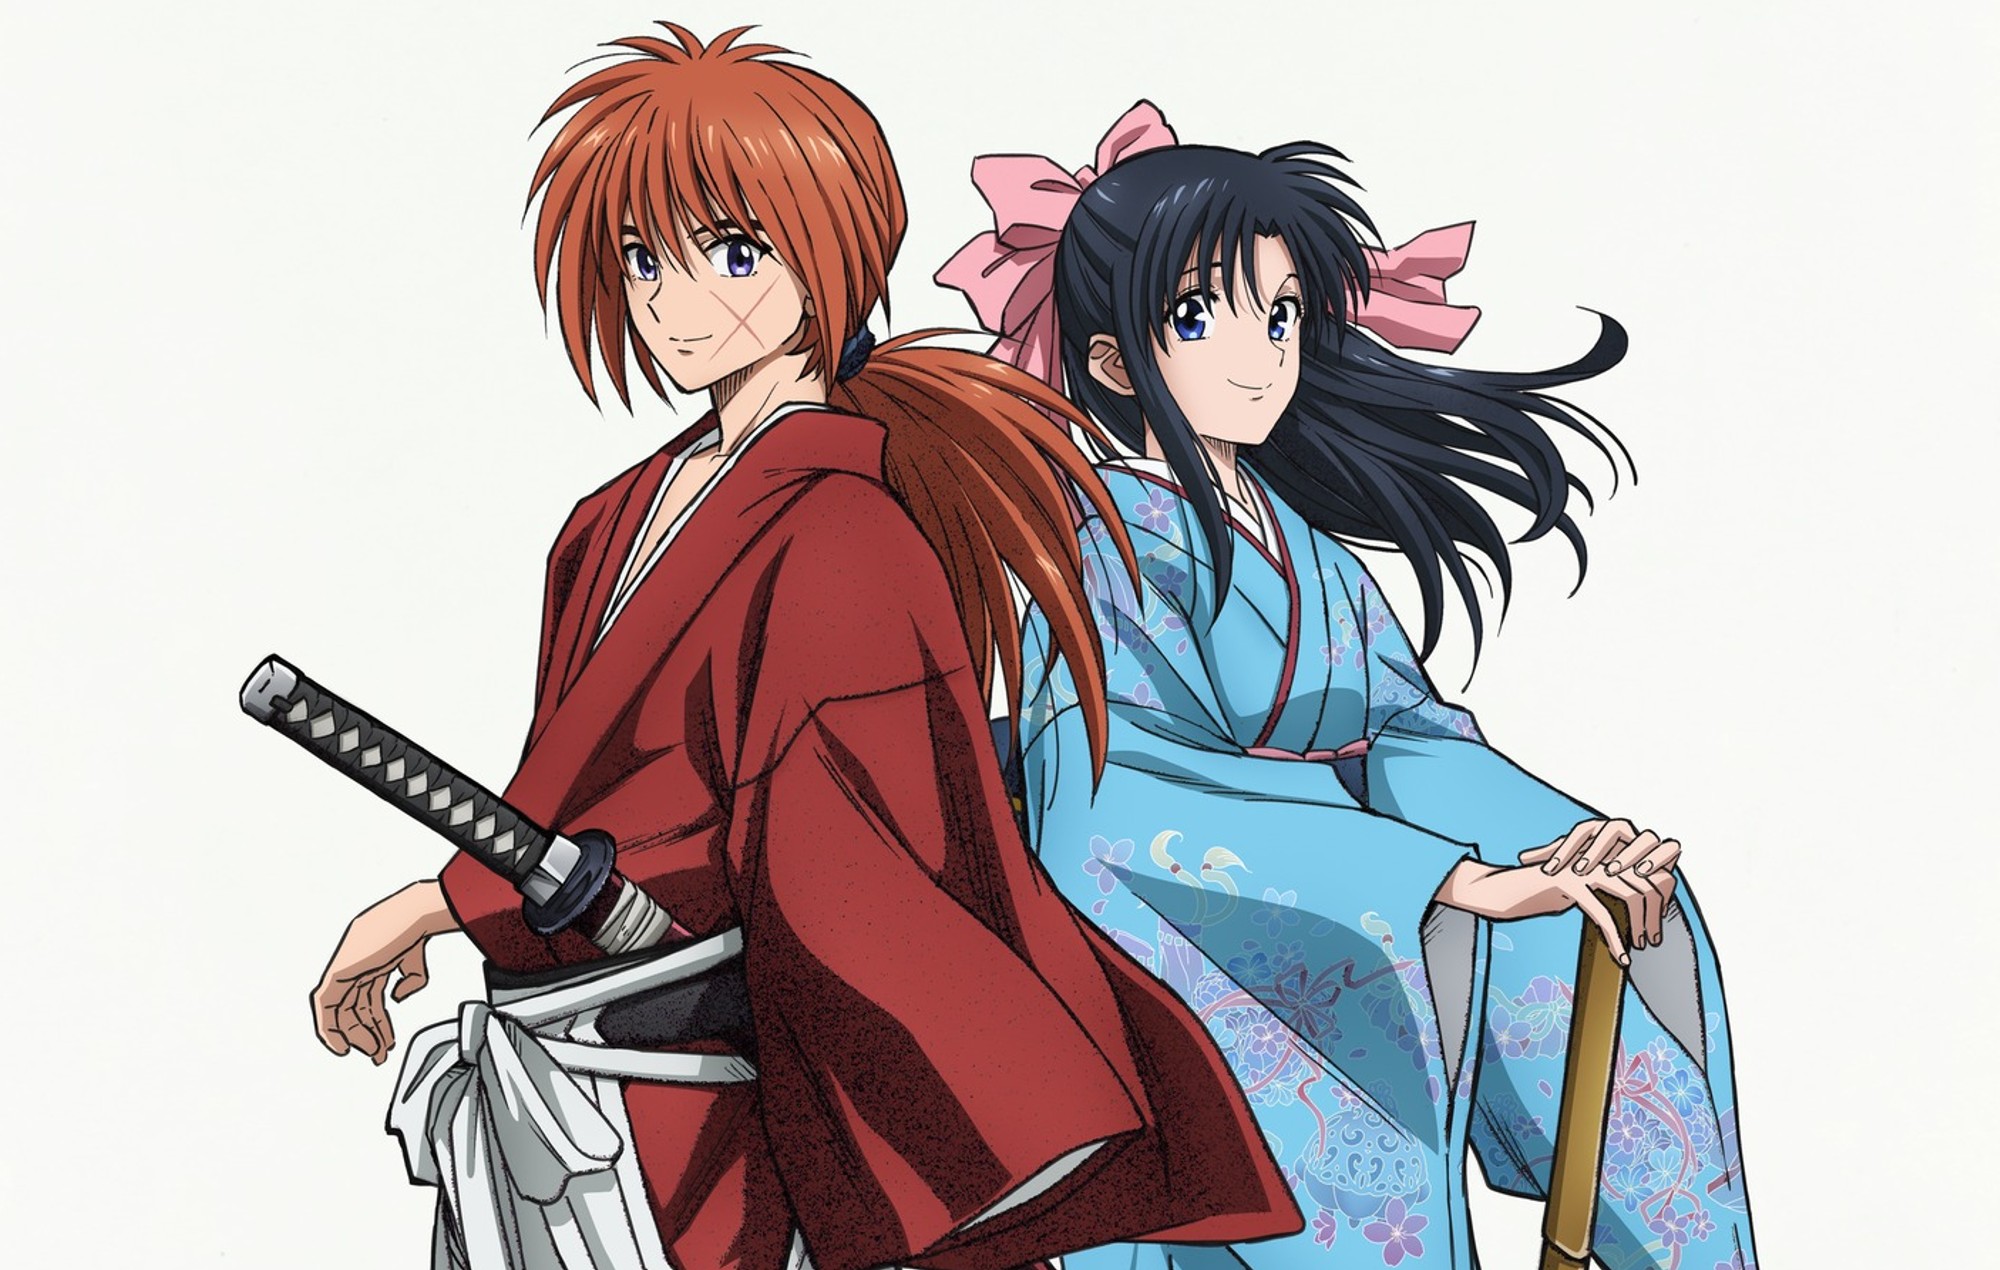 Rurouni Kenshin Episode 11 Release Date